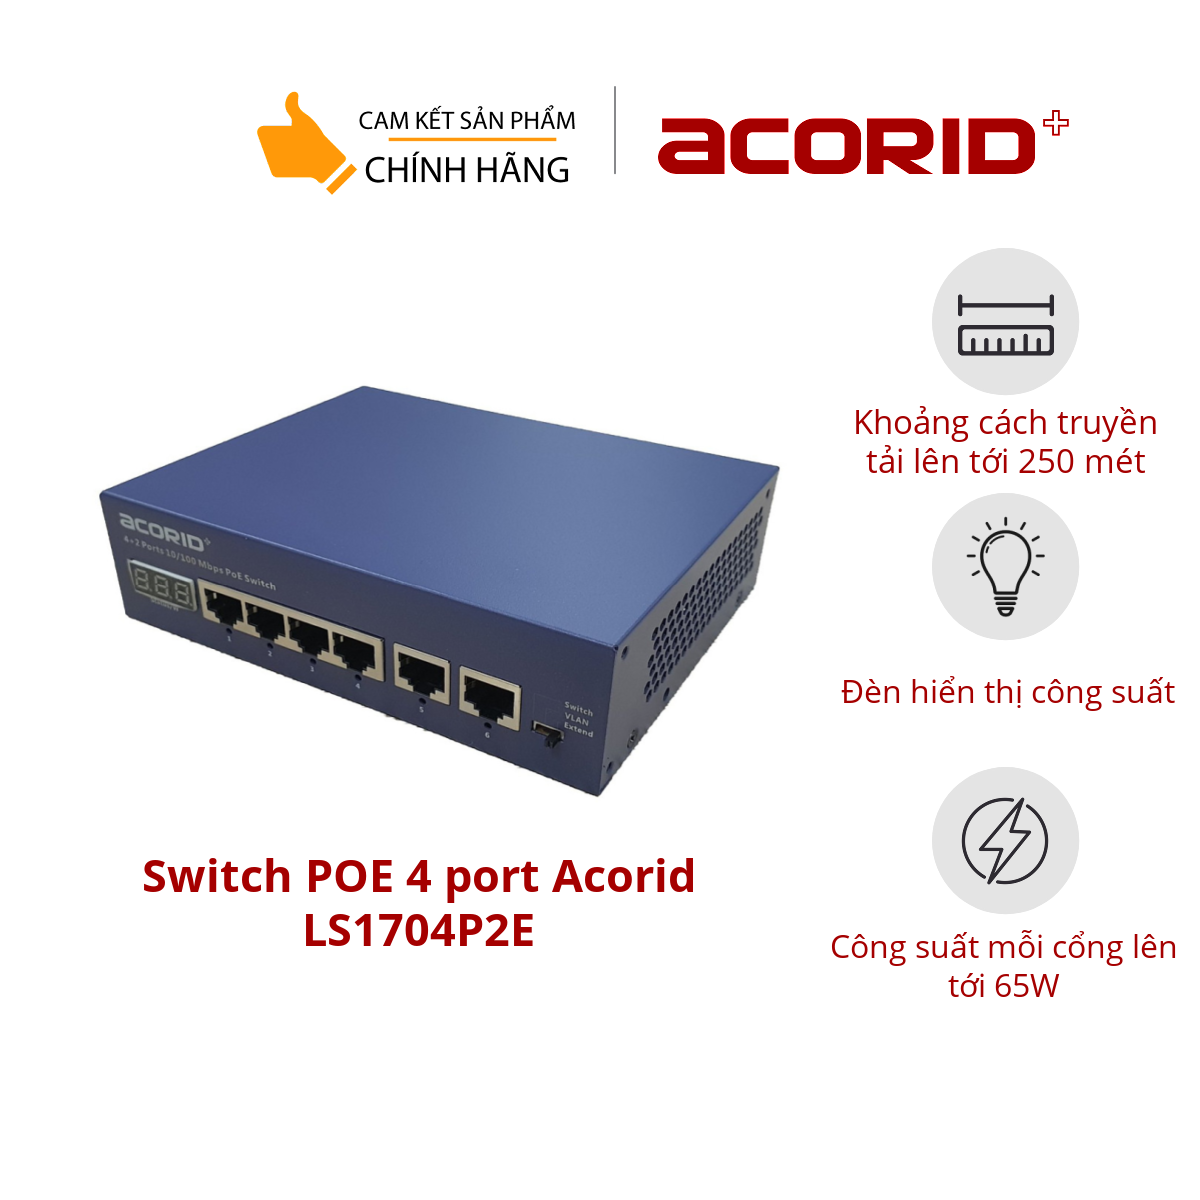 Switch poe 4 port Acorid LS1704P2E, 4 cổng POE+ 30W FE 10/100Mbps , 2 cổng Uplink, tổng công suất 65W, Có đèn hiển thị công suất, AI reboot thiết bị - Hàng chính hãng